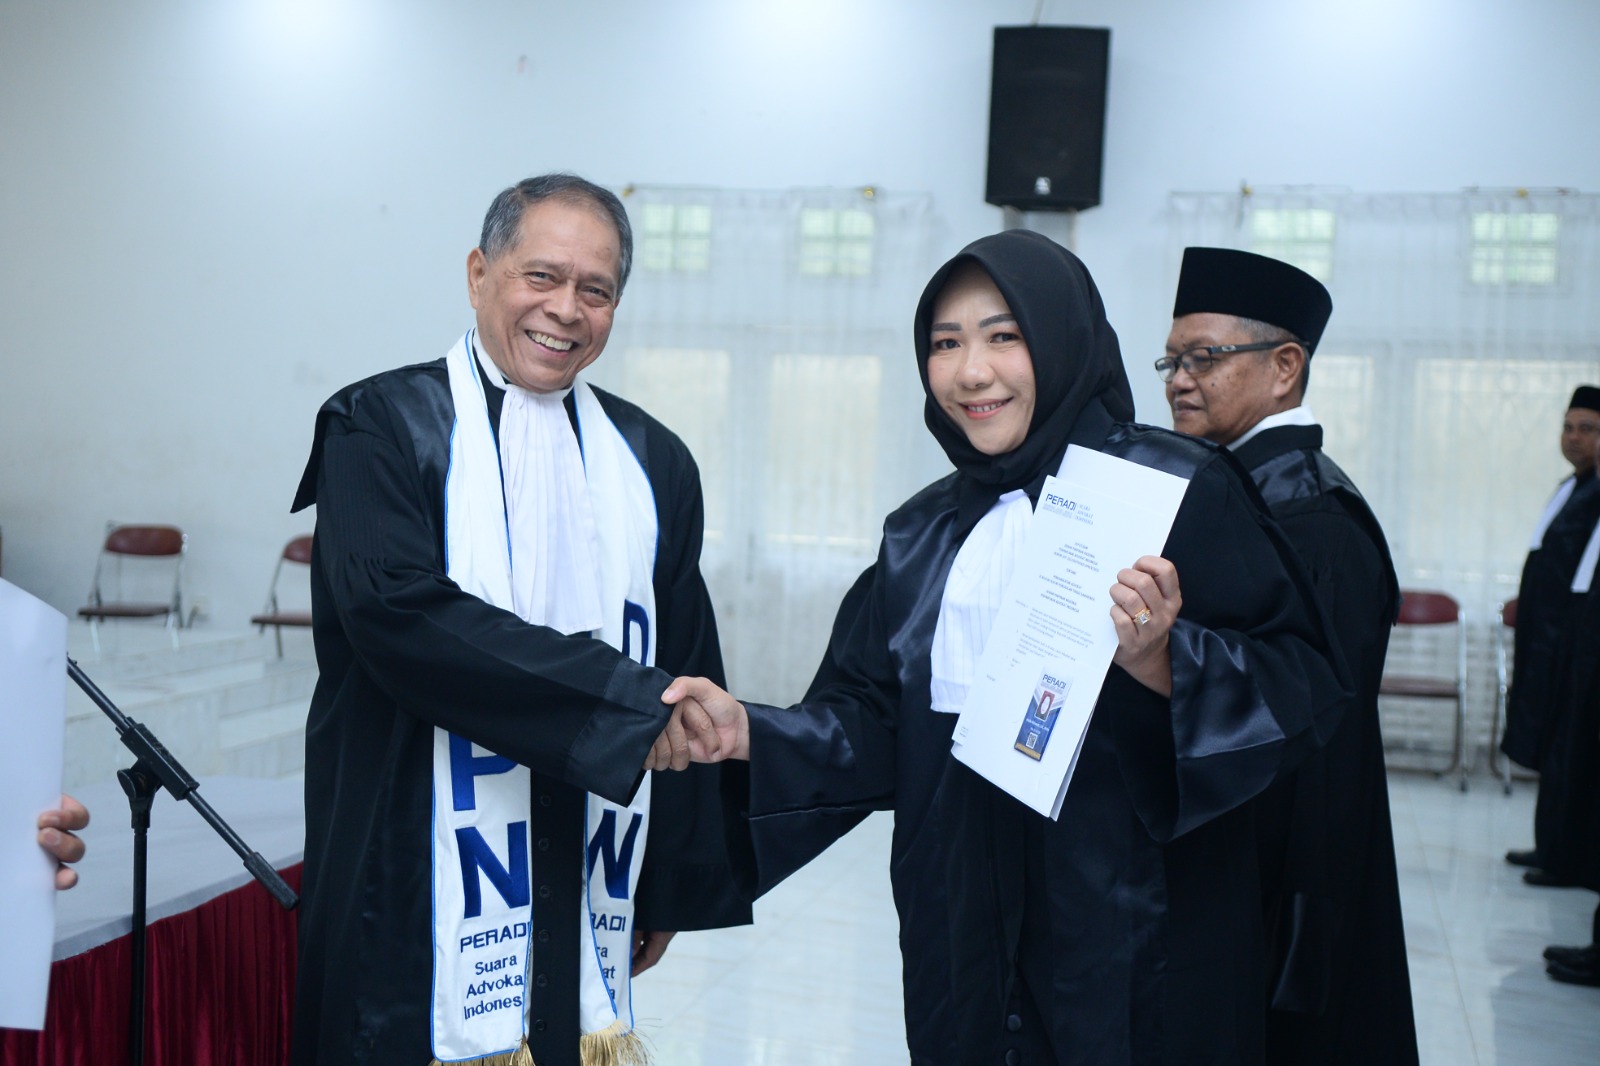 DPC PERADI SAI Samarinda telah melaksanakan Pengambilan Sumpah Advokat Se-Wilayah Hukum Pengadilan Tinggi Kalimantan Timur, pada tanggal 14 November 2023, dengan jumlah peserta sebanyak 53 orang.